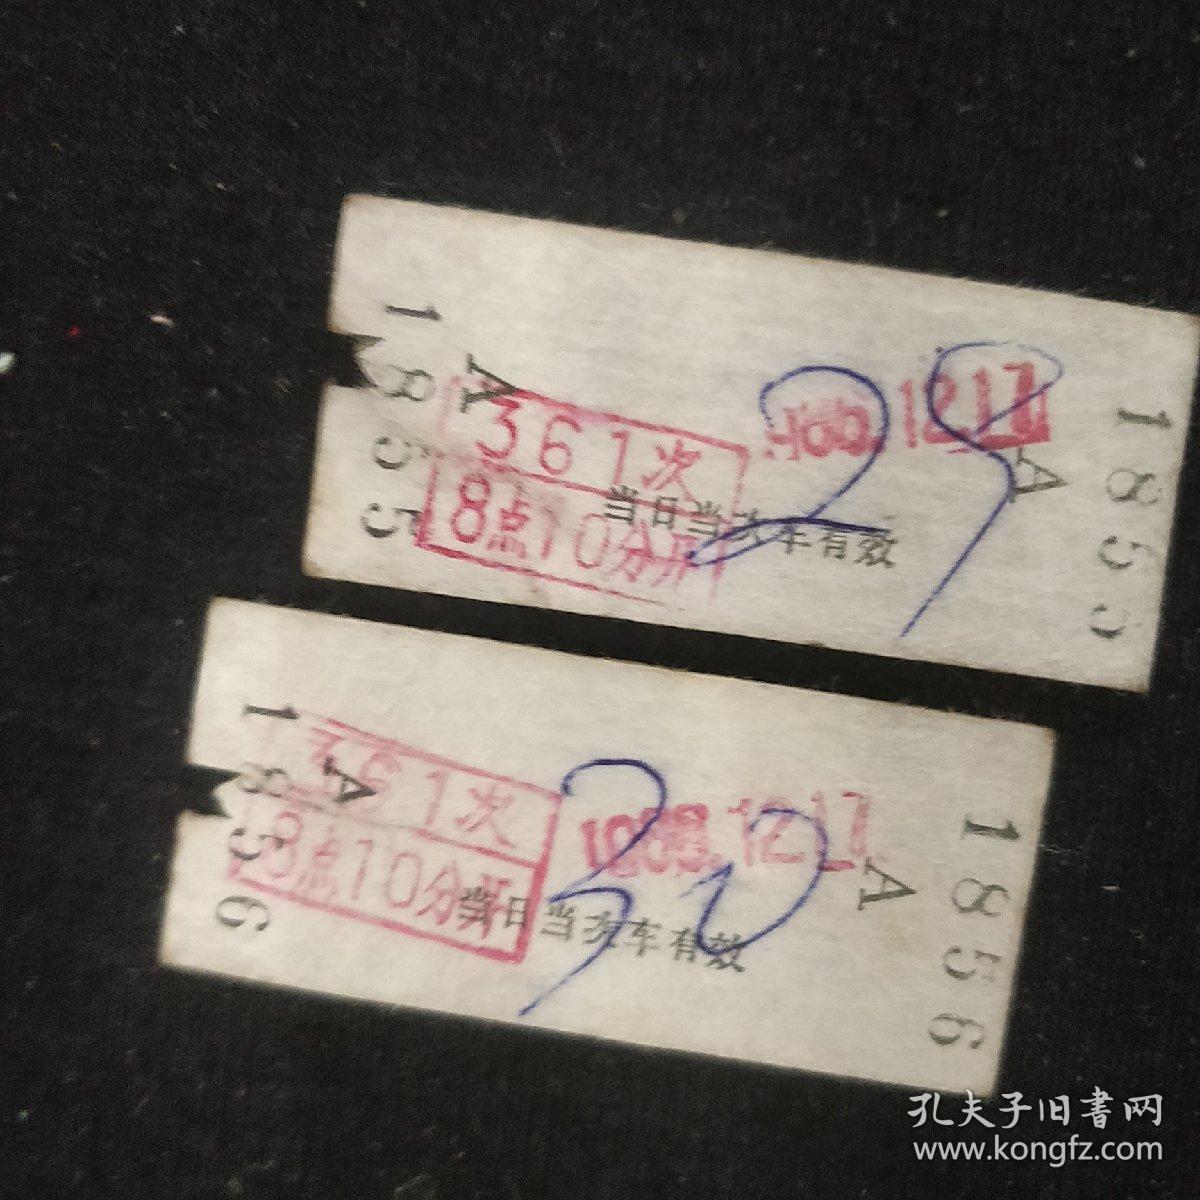 早期卡片式车票《辽宁公路汽车客票》两张合售 沈阳-冷子卜 有撕口 1988年 书品如图.